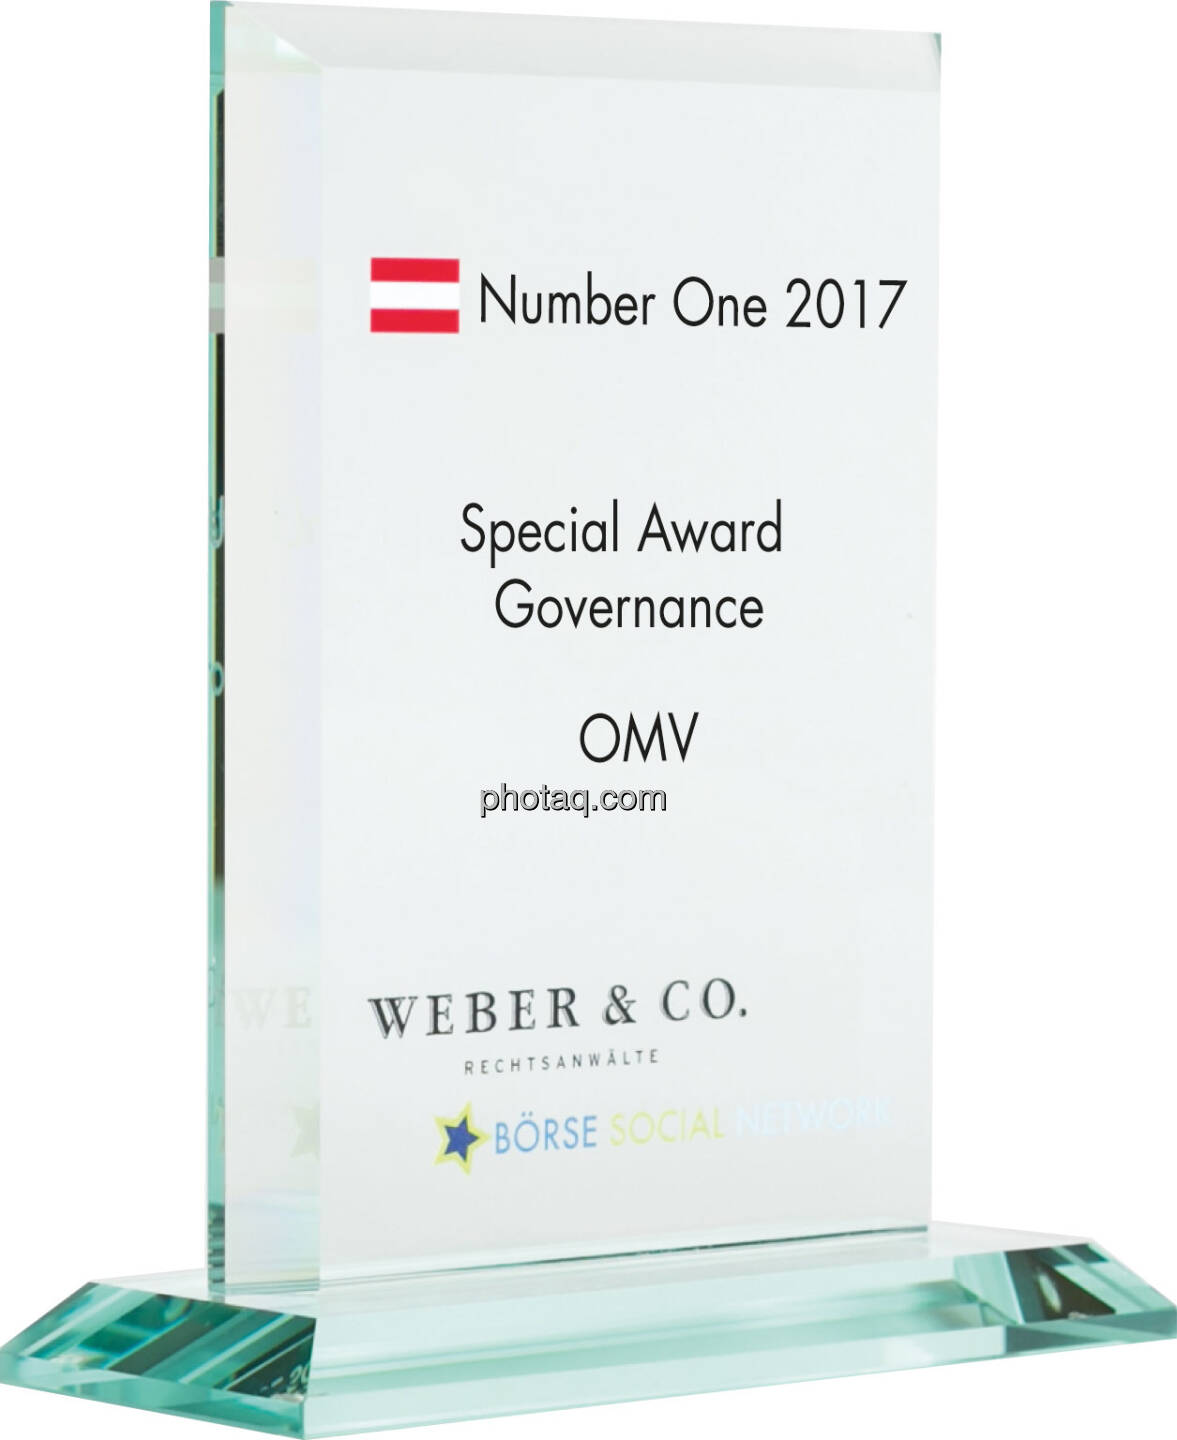 Number One Awards 2017 - Special Award Governance - OMV